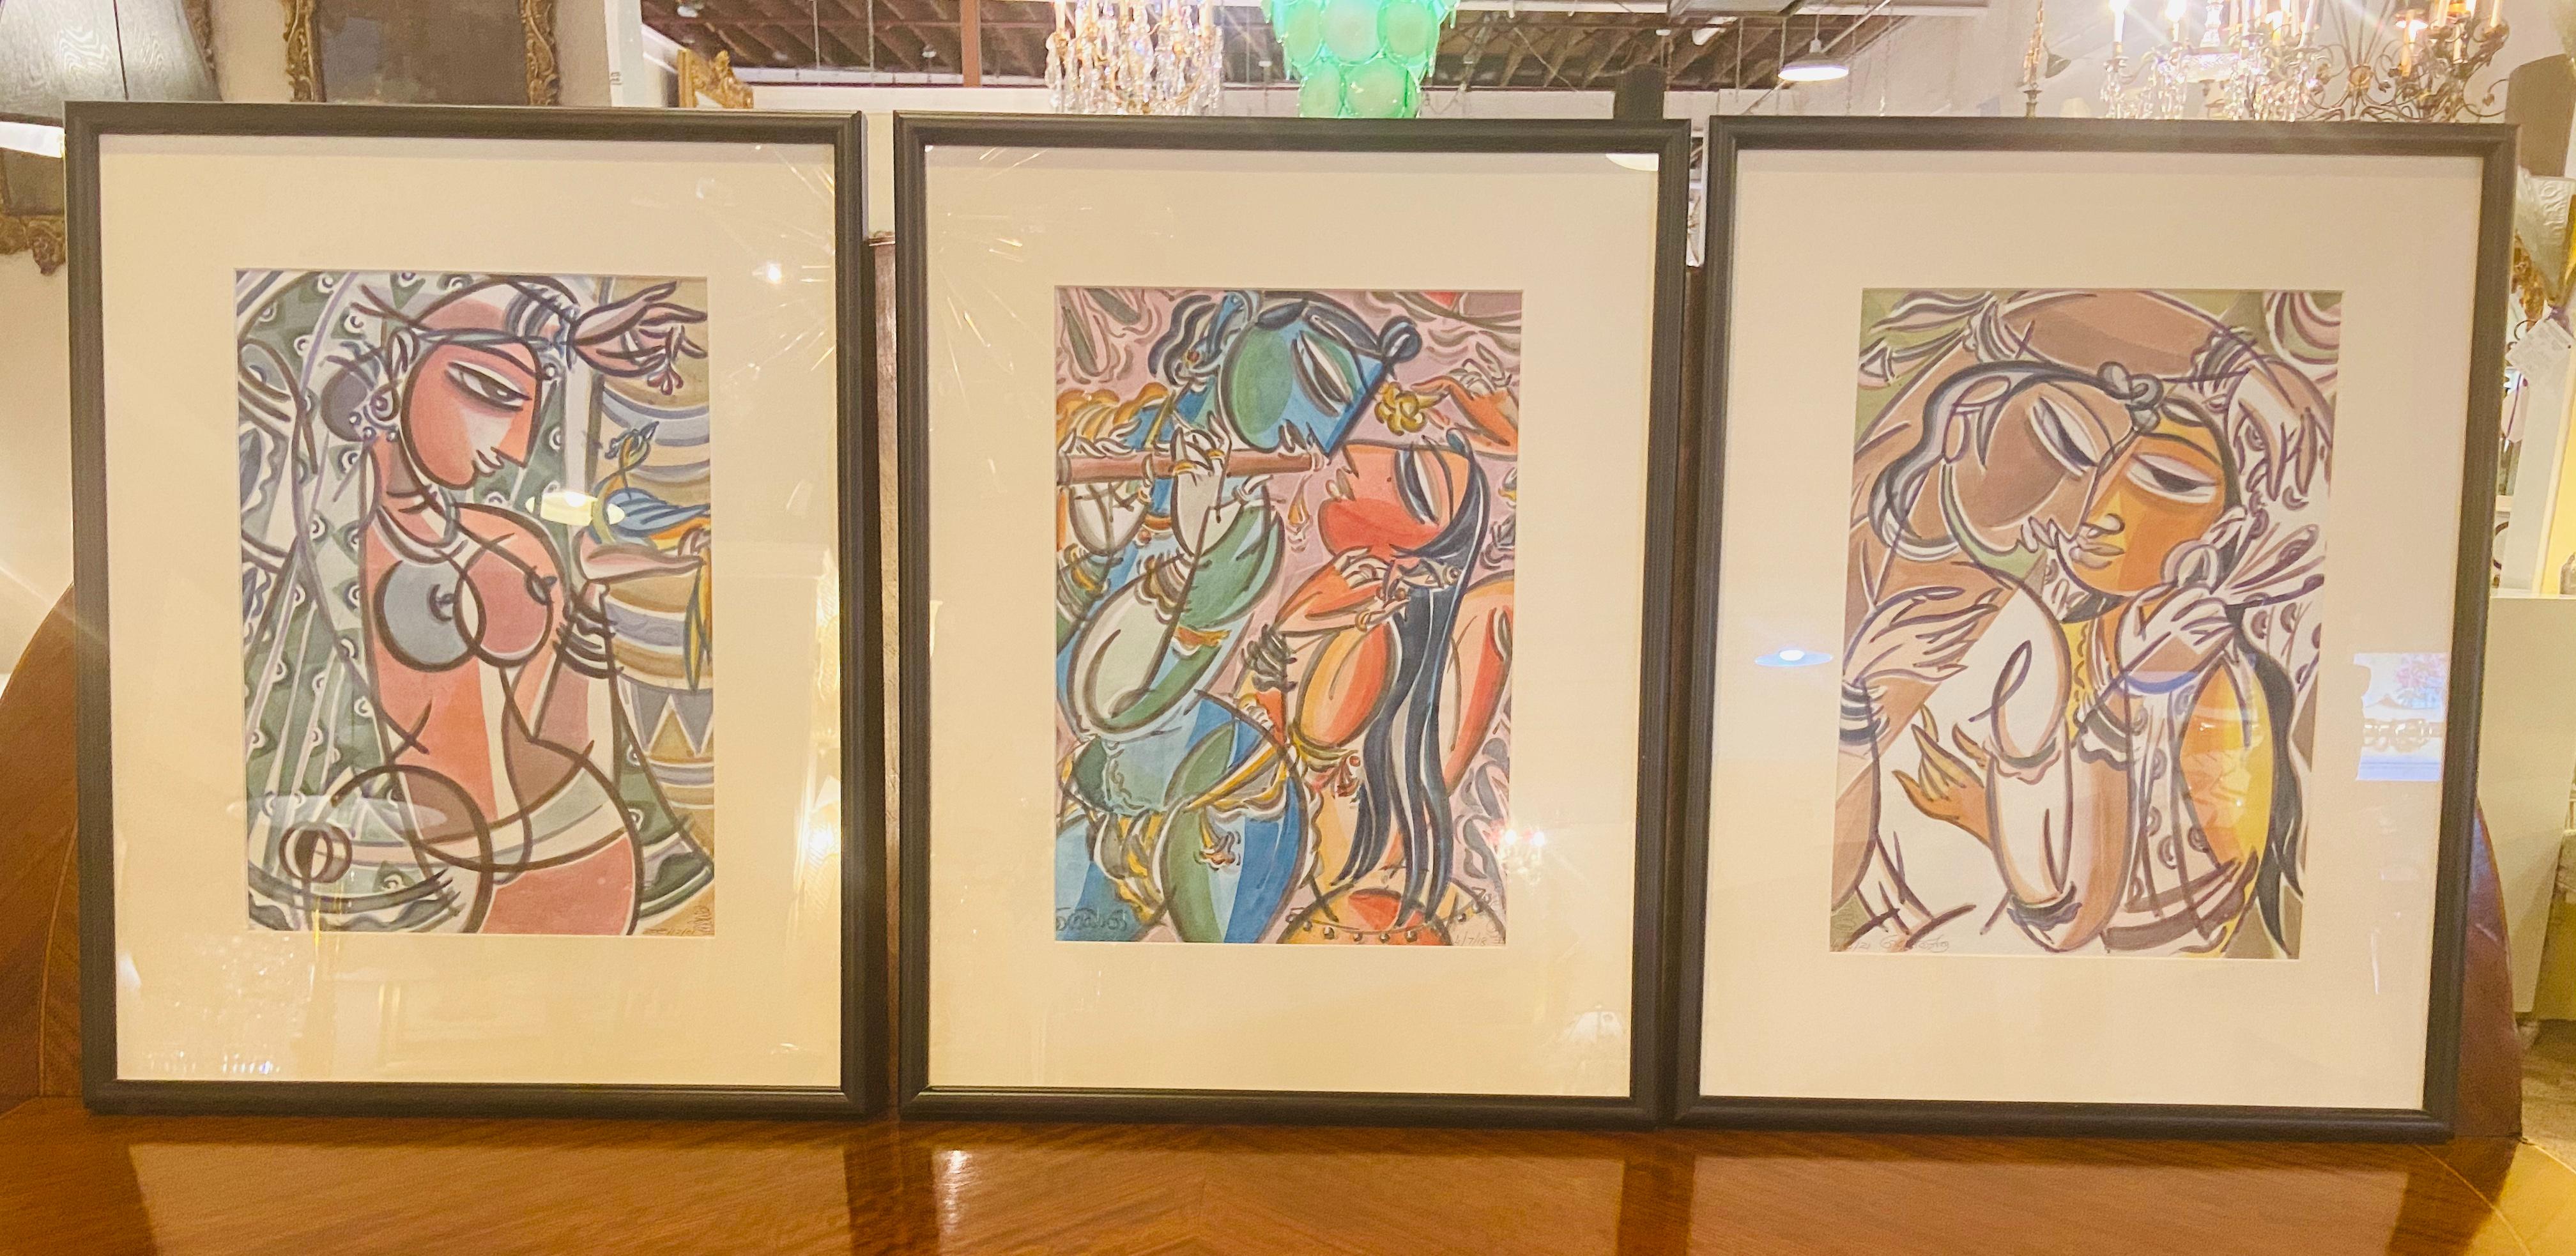 Eine Gruppe von drei figurativen Aquarellen im Stil Picassos, die einen Mann und eine Frau mit erotischem Flair darstellen. Die Gemälde sind gerahmt und signiert.